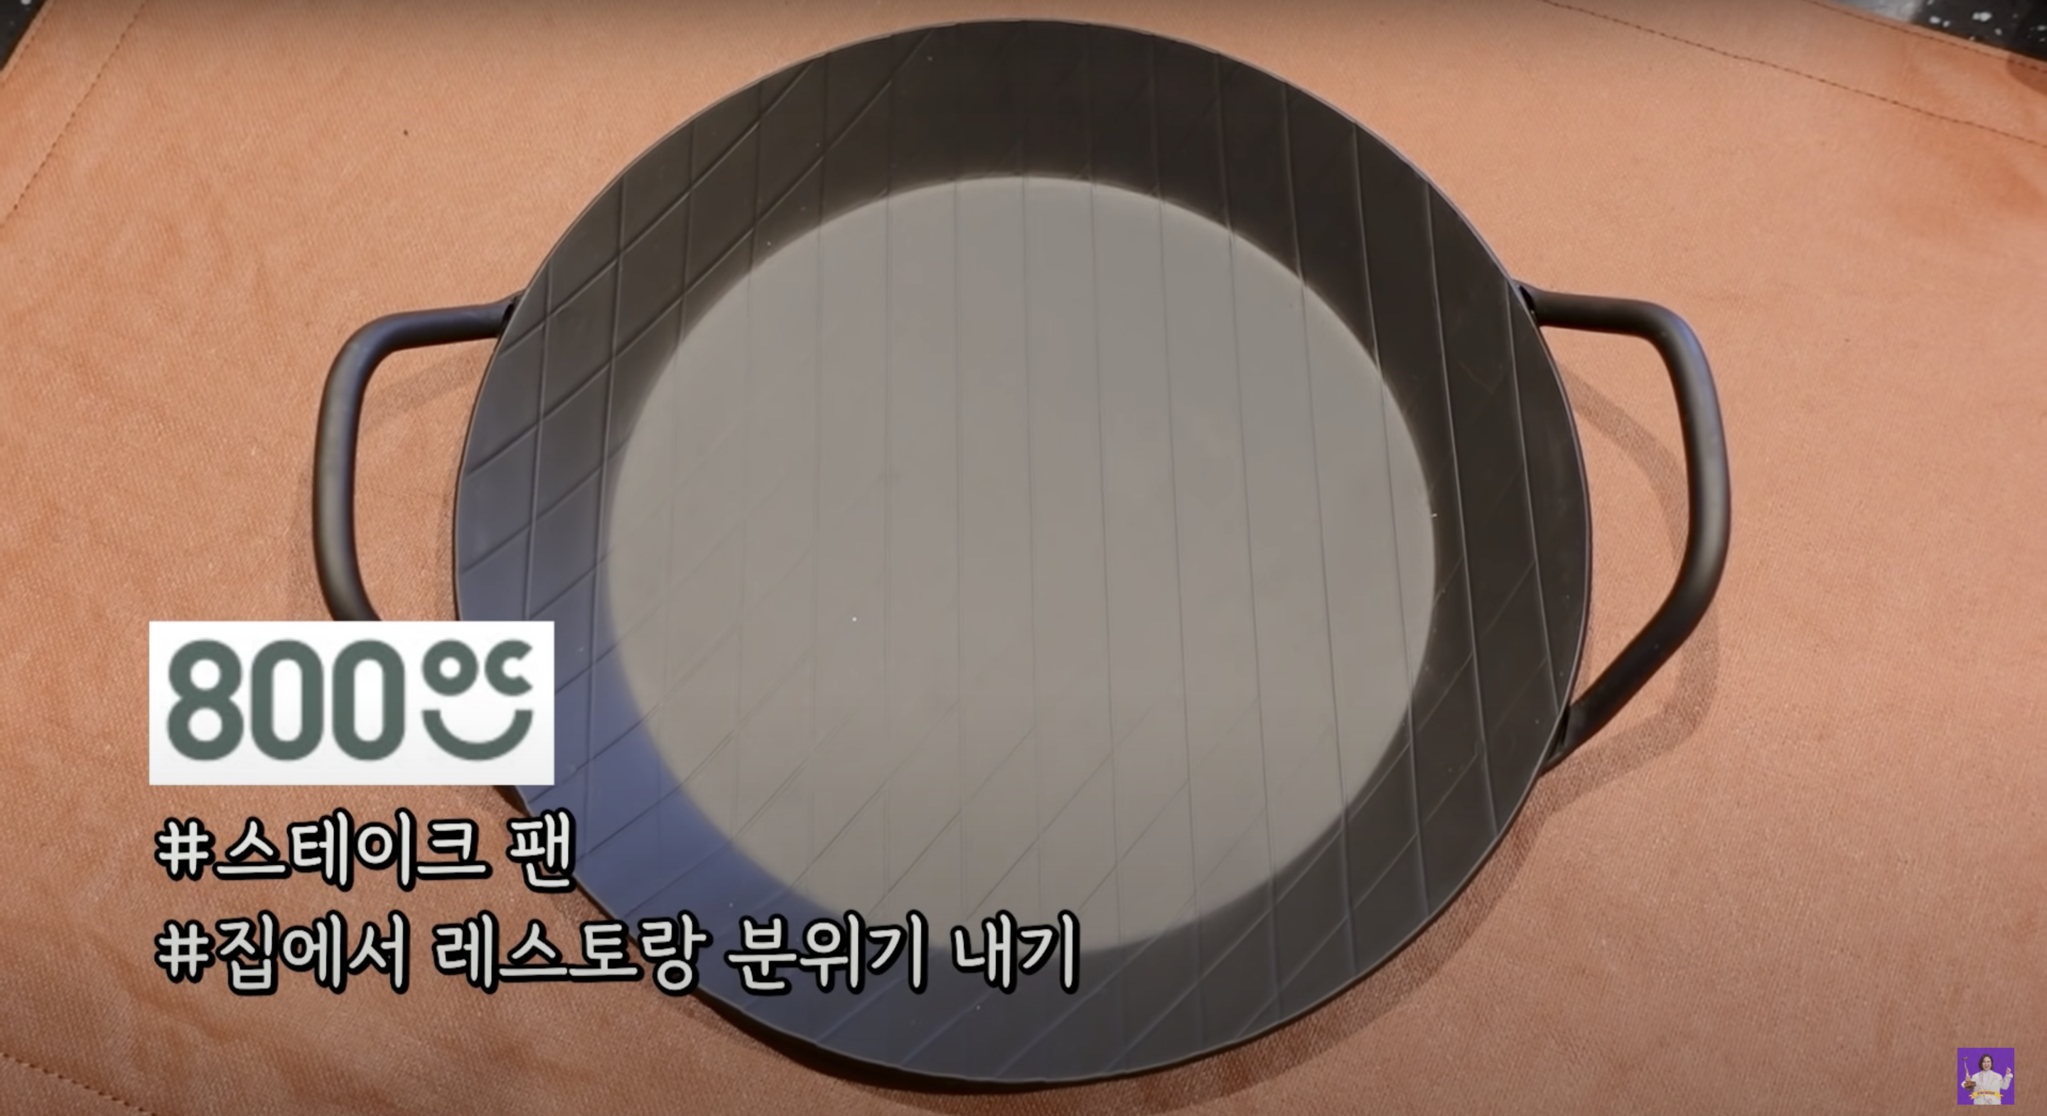 ‘김숙티비 kimsookTV’ 유튜브 영상 캡처